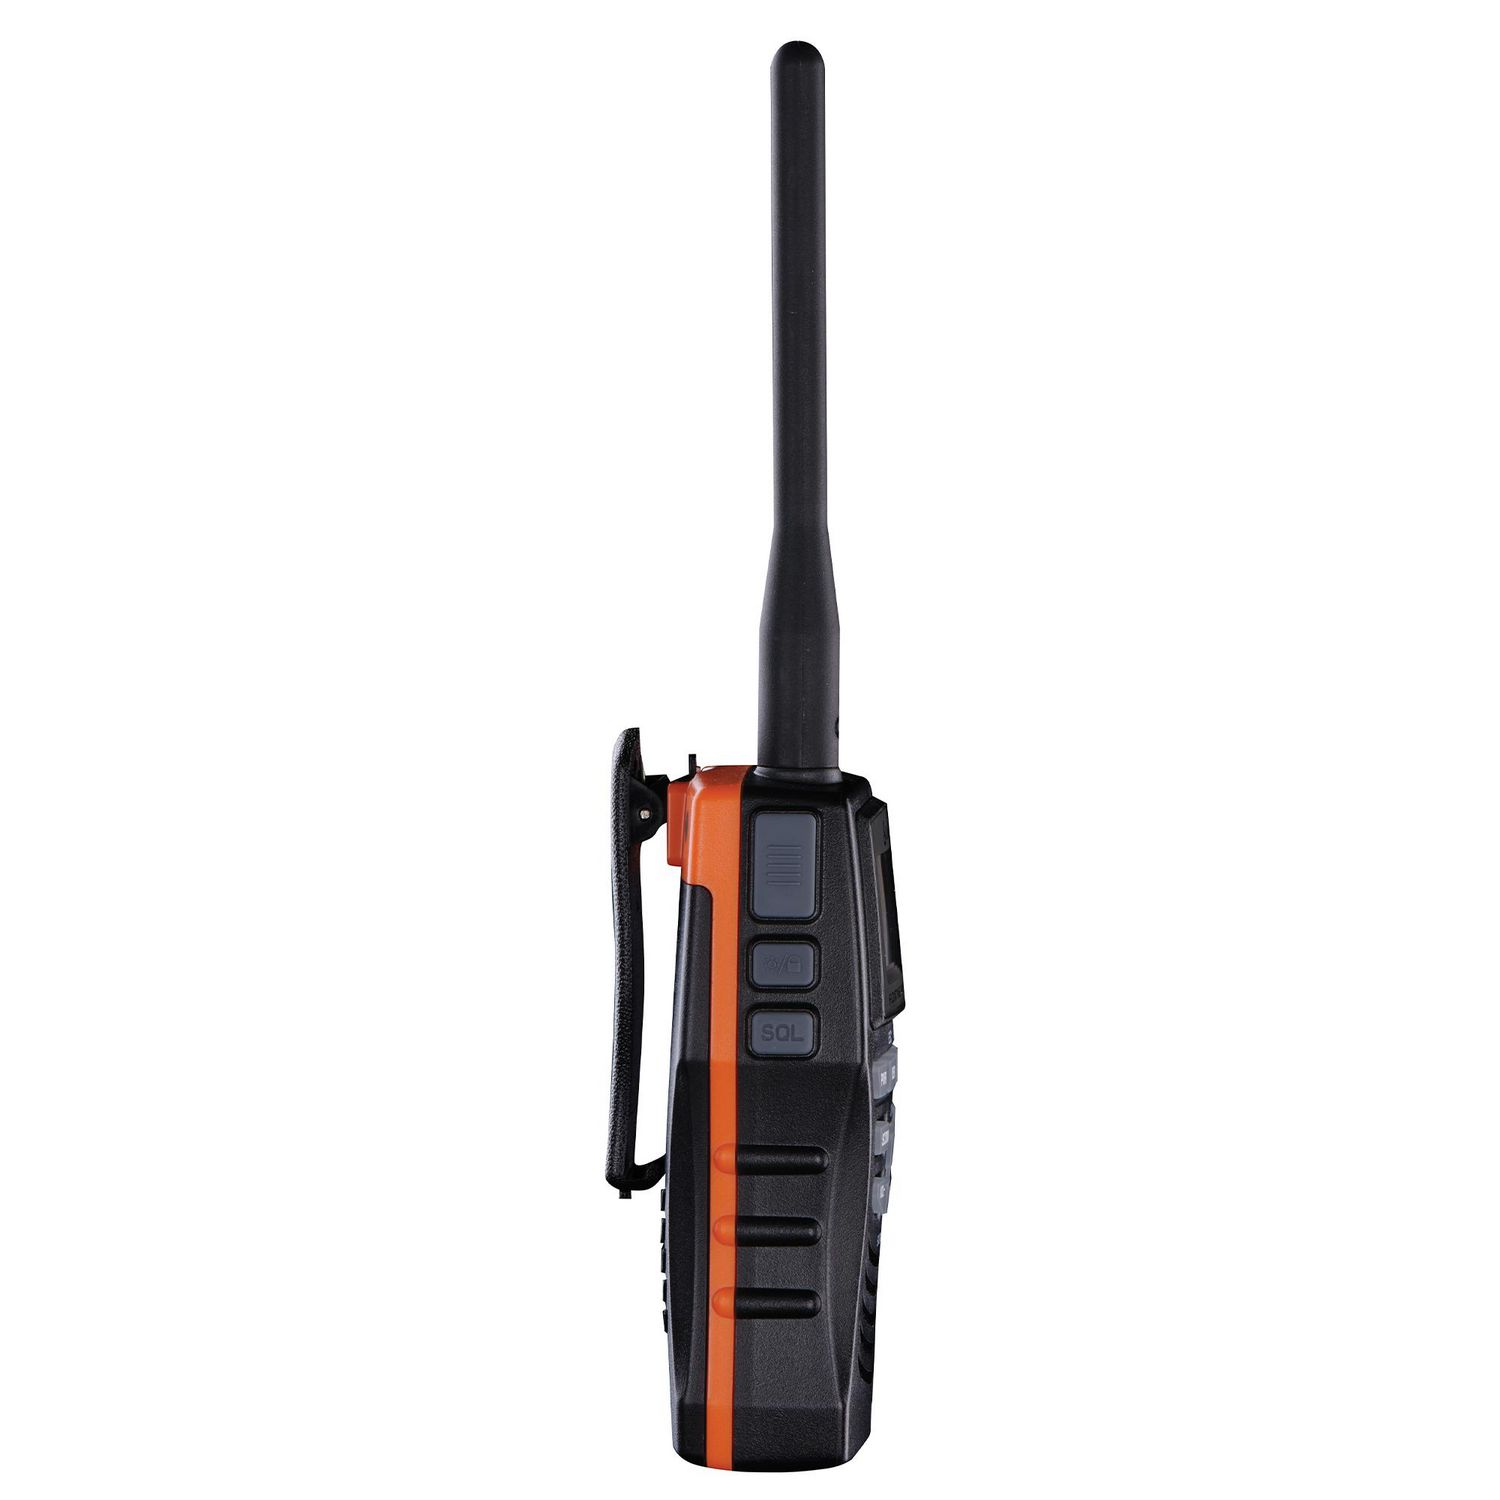 Cobra MR HH150 FLT Watt Hand Held VHF Radio – Black